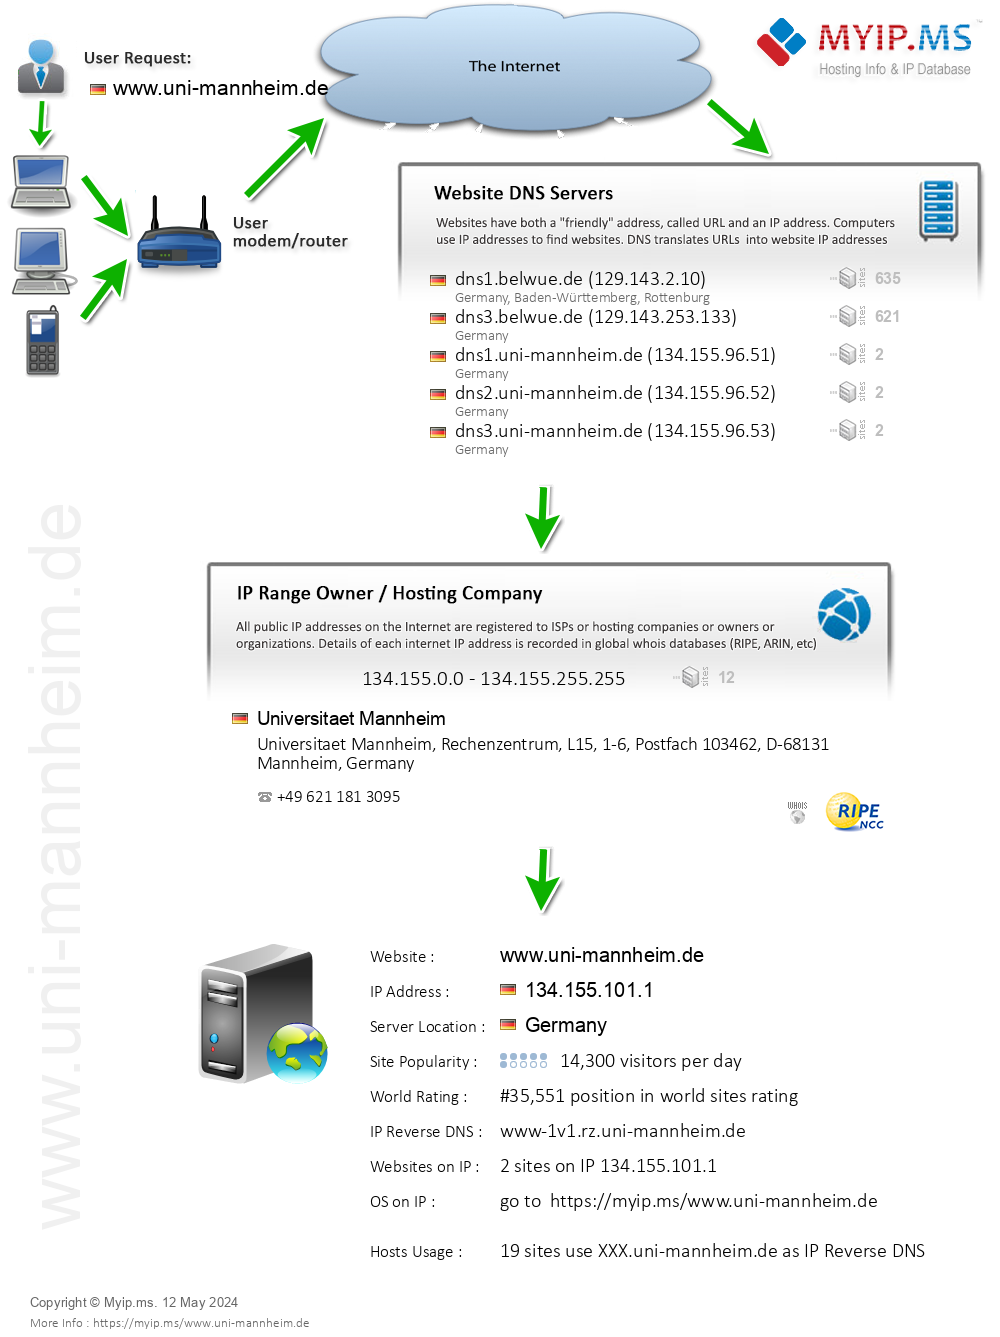 Uni-mannheim.de - Website Hosting Visual IP Diagram